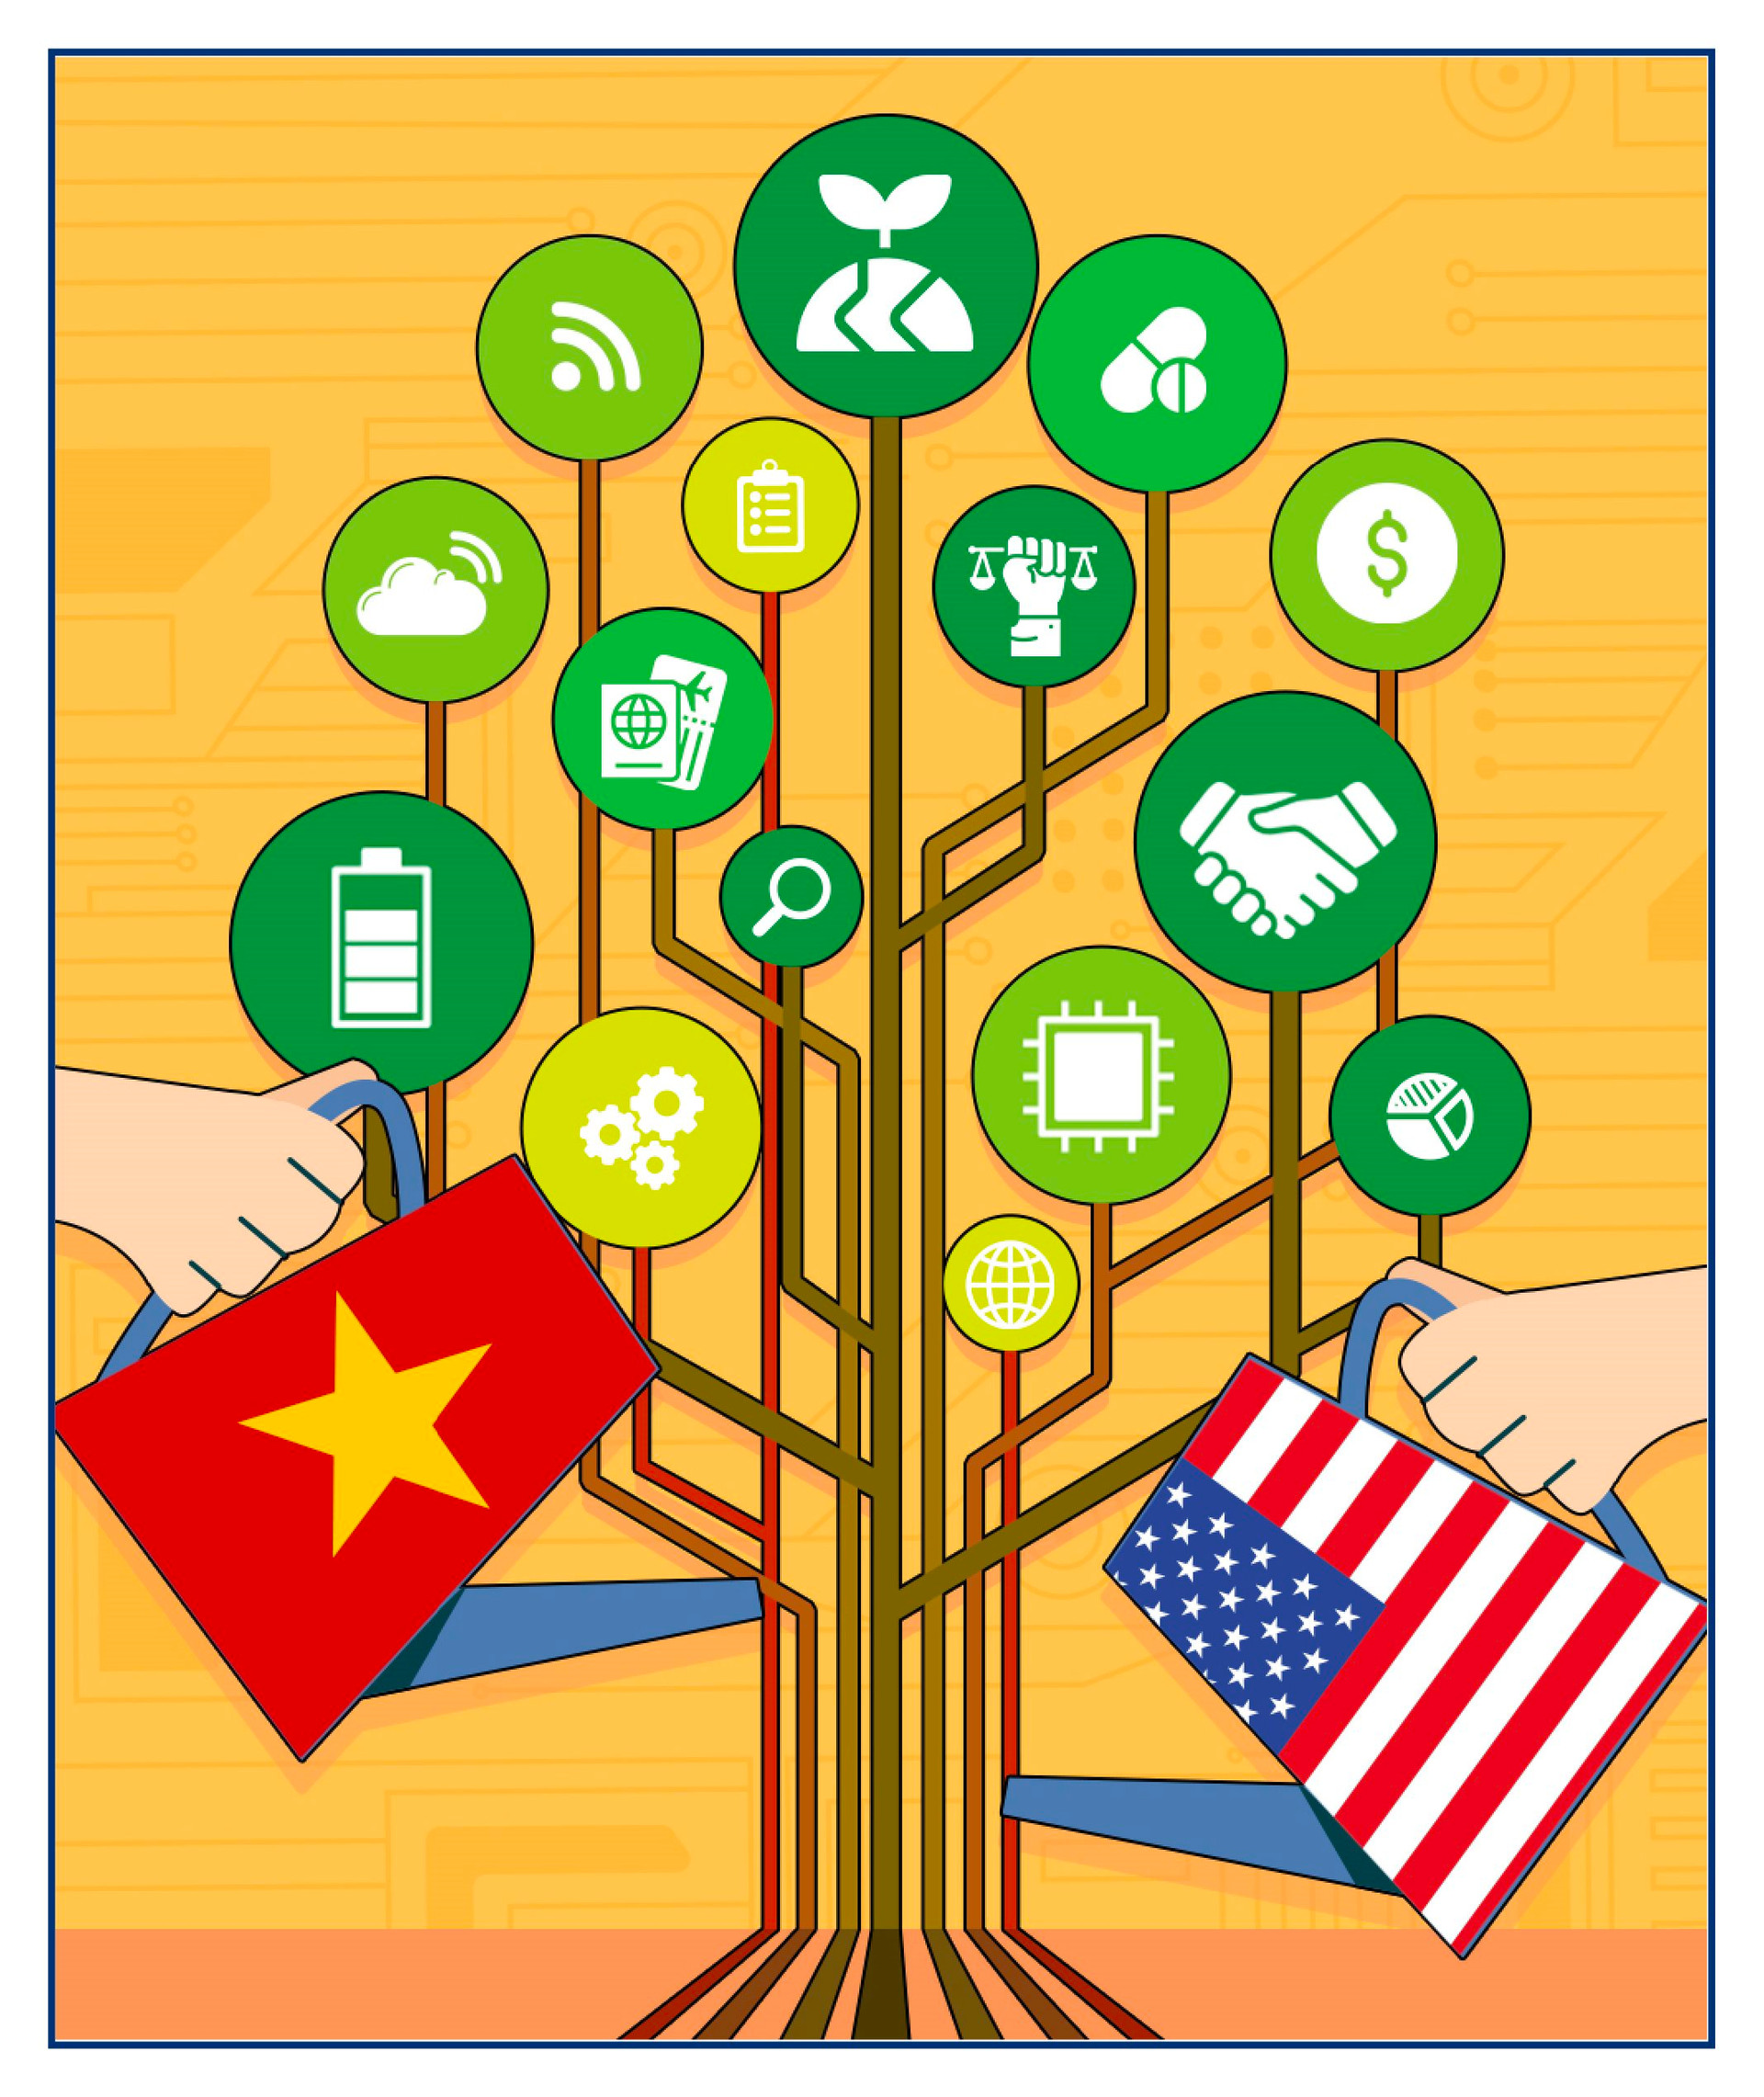 Nghệ An, FPT, ACB, VinFast, VPBank, NIC, sầu riêng, bán dẫn… vào danh sách 10 điểm nhấn của kinh tế Việt Nam năm 2023 - Ảnh 4.